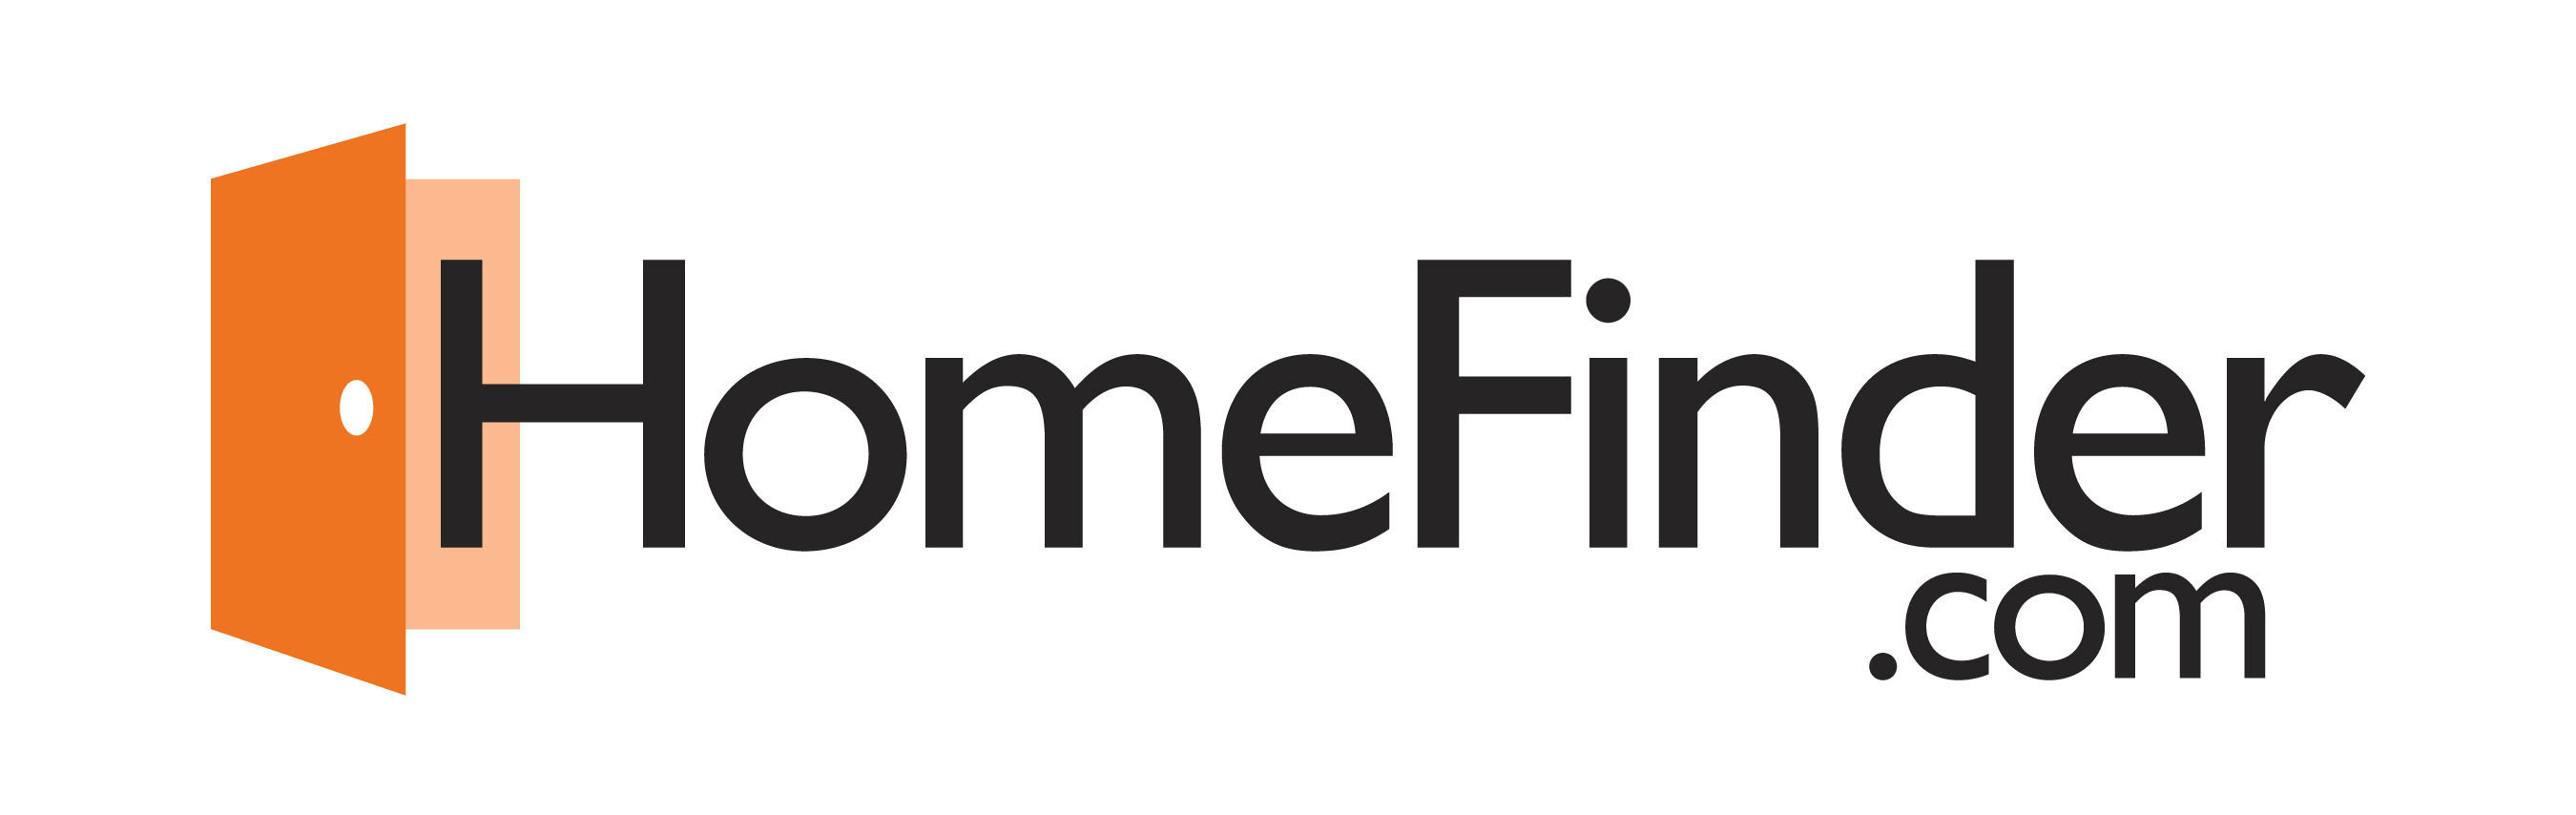 HomeFinder.com Logo. (PRNewsFoto/HomeFinder.com) (PRNewsFoto/HOMEFINDER_COM)